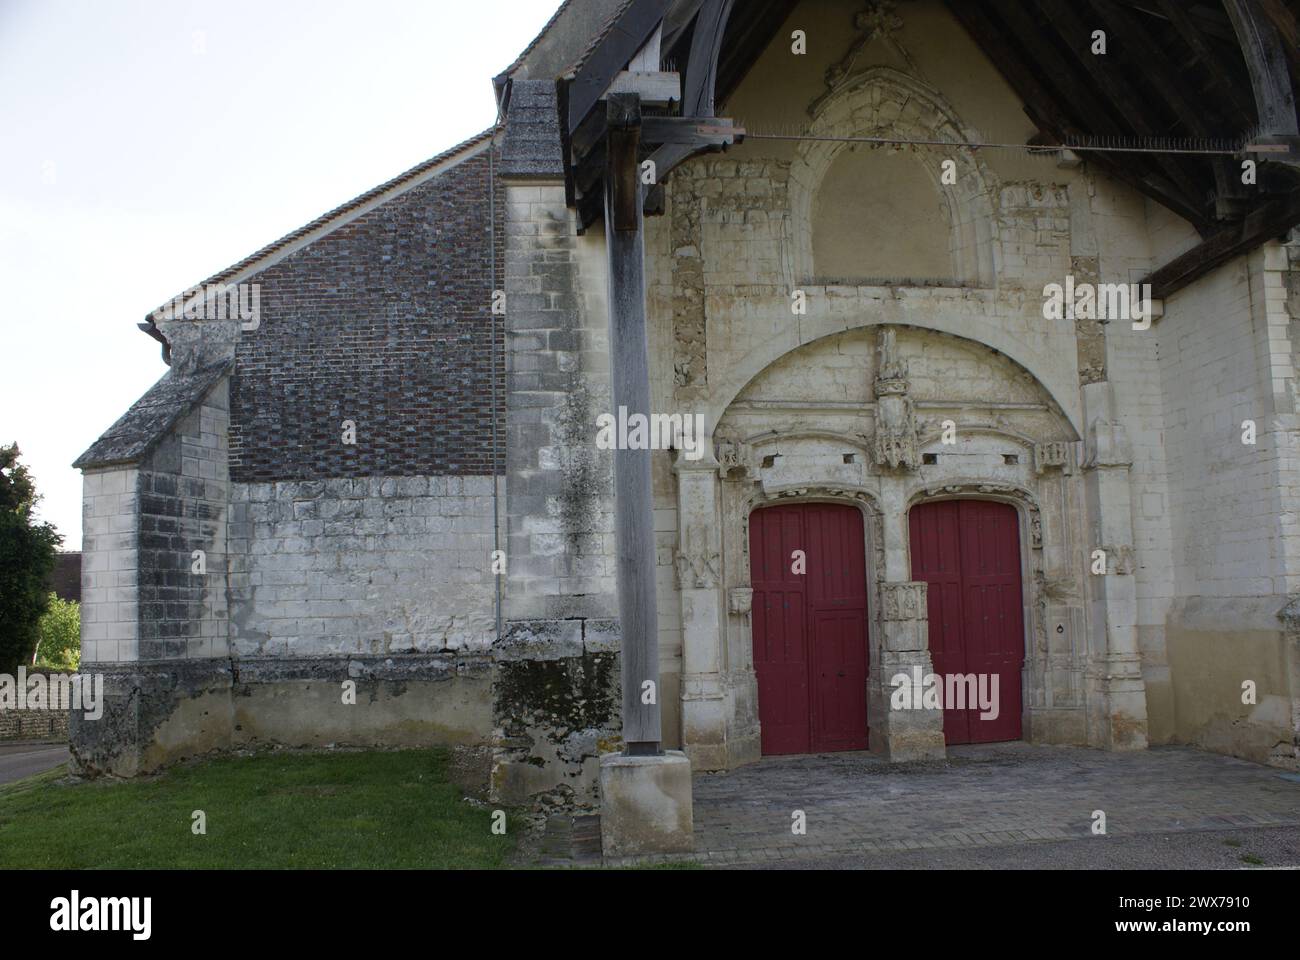 L’église Saint-Pierre-aux-Liens a été édifiée au début du XVIe s. avec des matériaux locaux, soubassement en maçonnerie de silex avec mortier de chaux Stock Photo